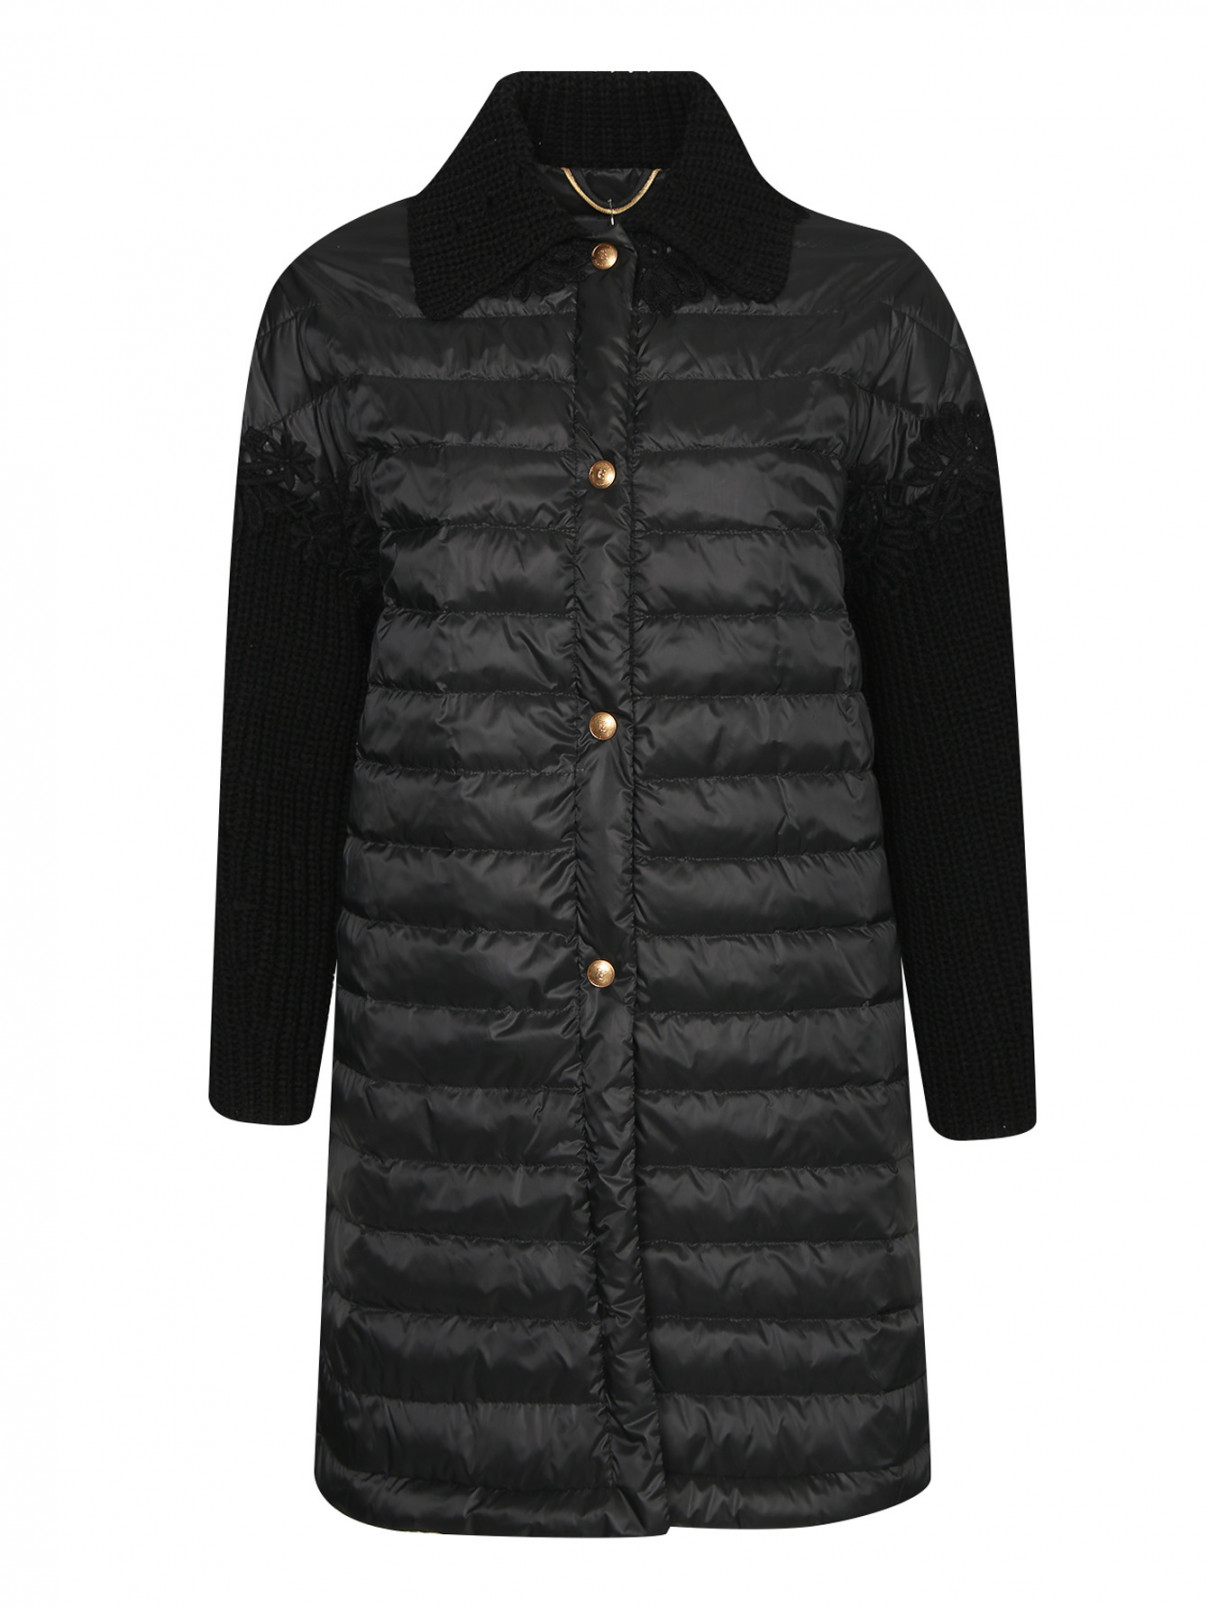 Комбинированная куртка с аппликацией Ermanno Scervino  –  Общий вид  – Цвет:  Черный